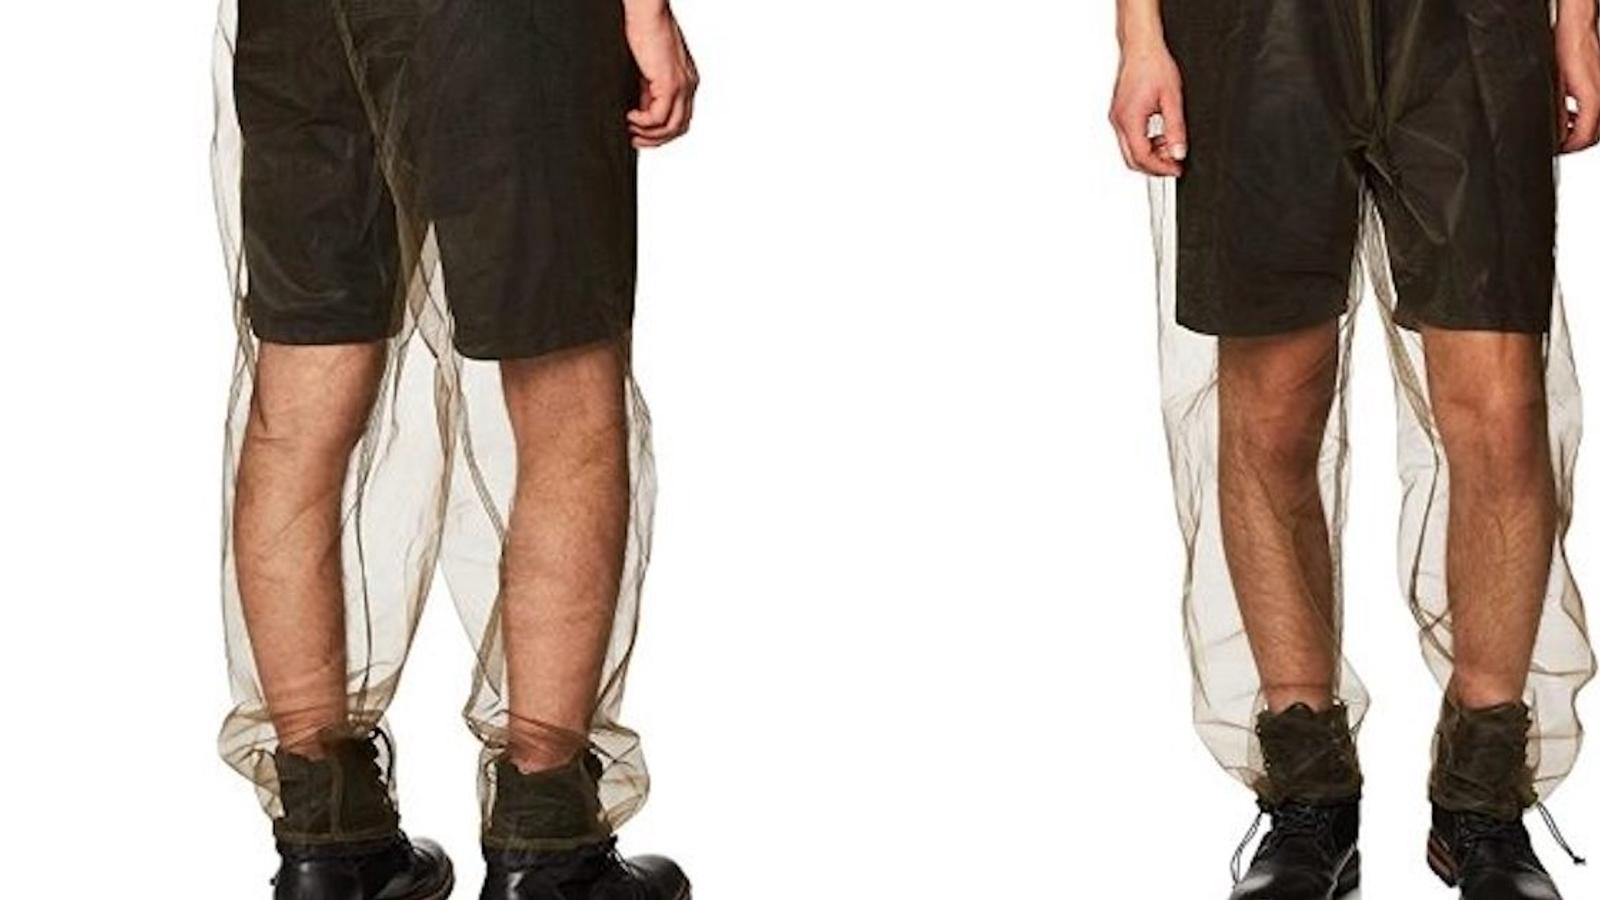 Ce « pantalon anti-insectes » en filet peut aider à éloigner les moustiques cet été